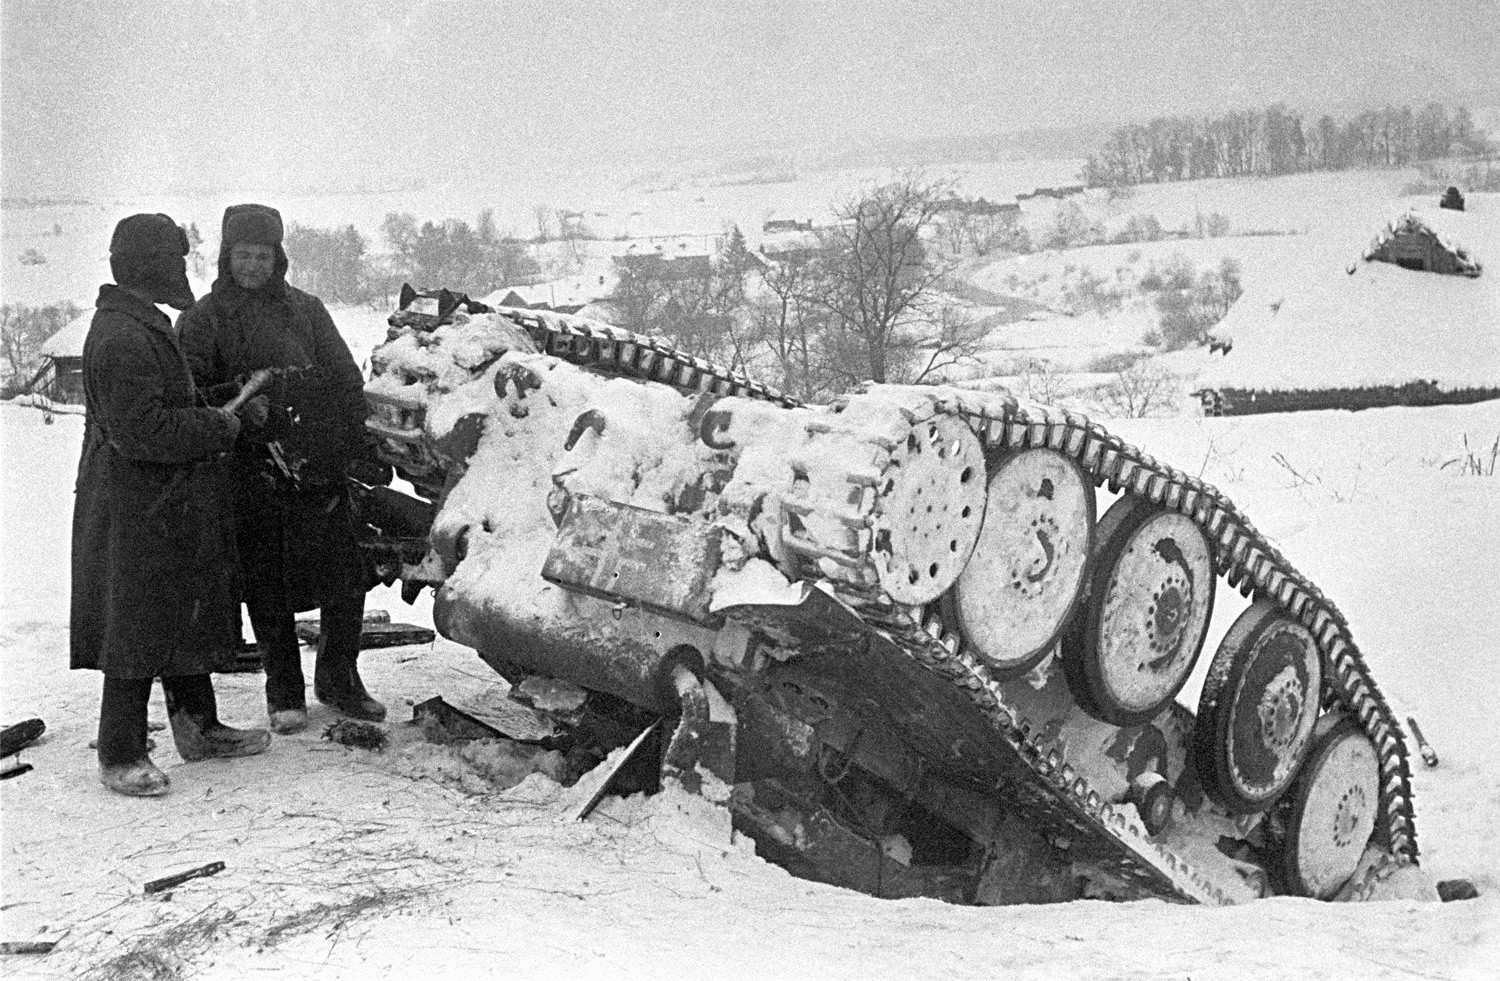 Sovjetski vojnici kraj onesposobljenog nacističkog tenka. Bitka kod Moskve.